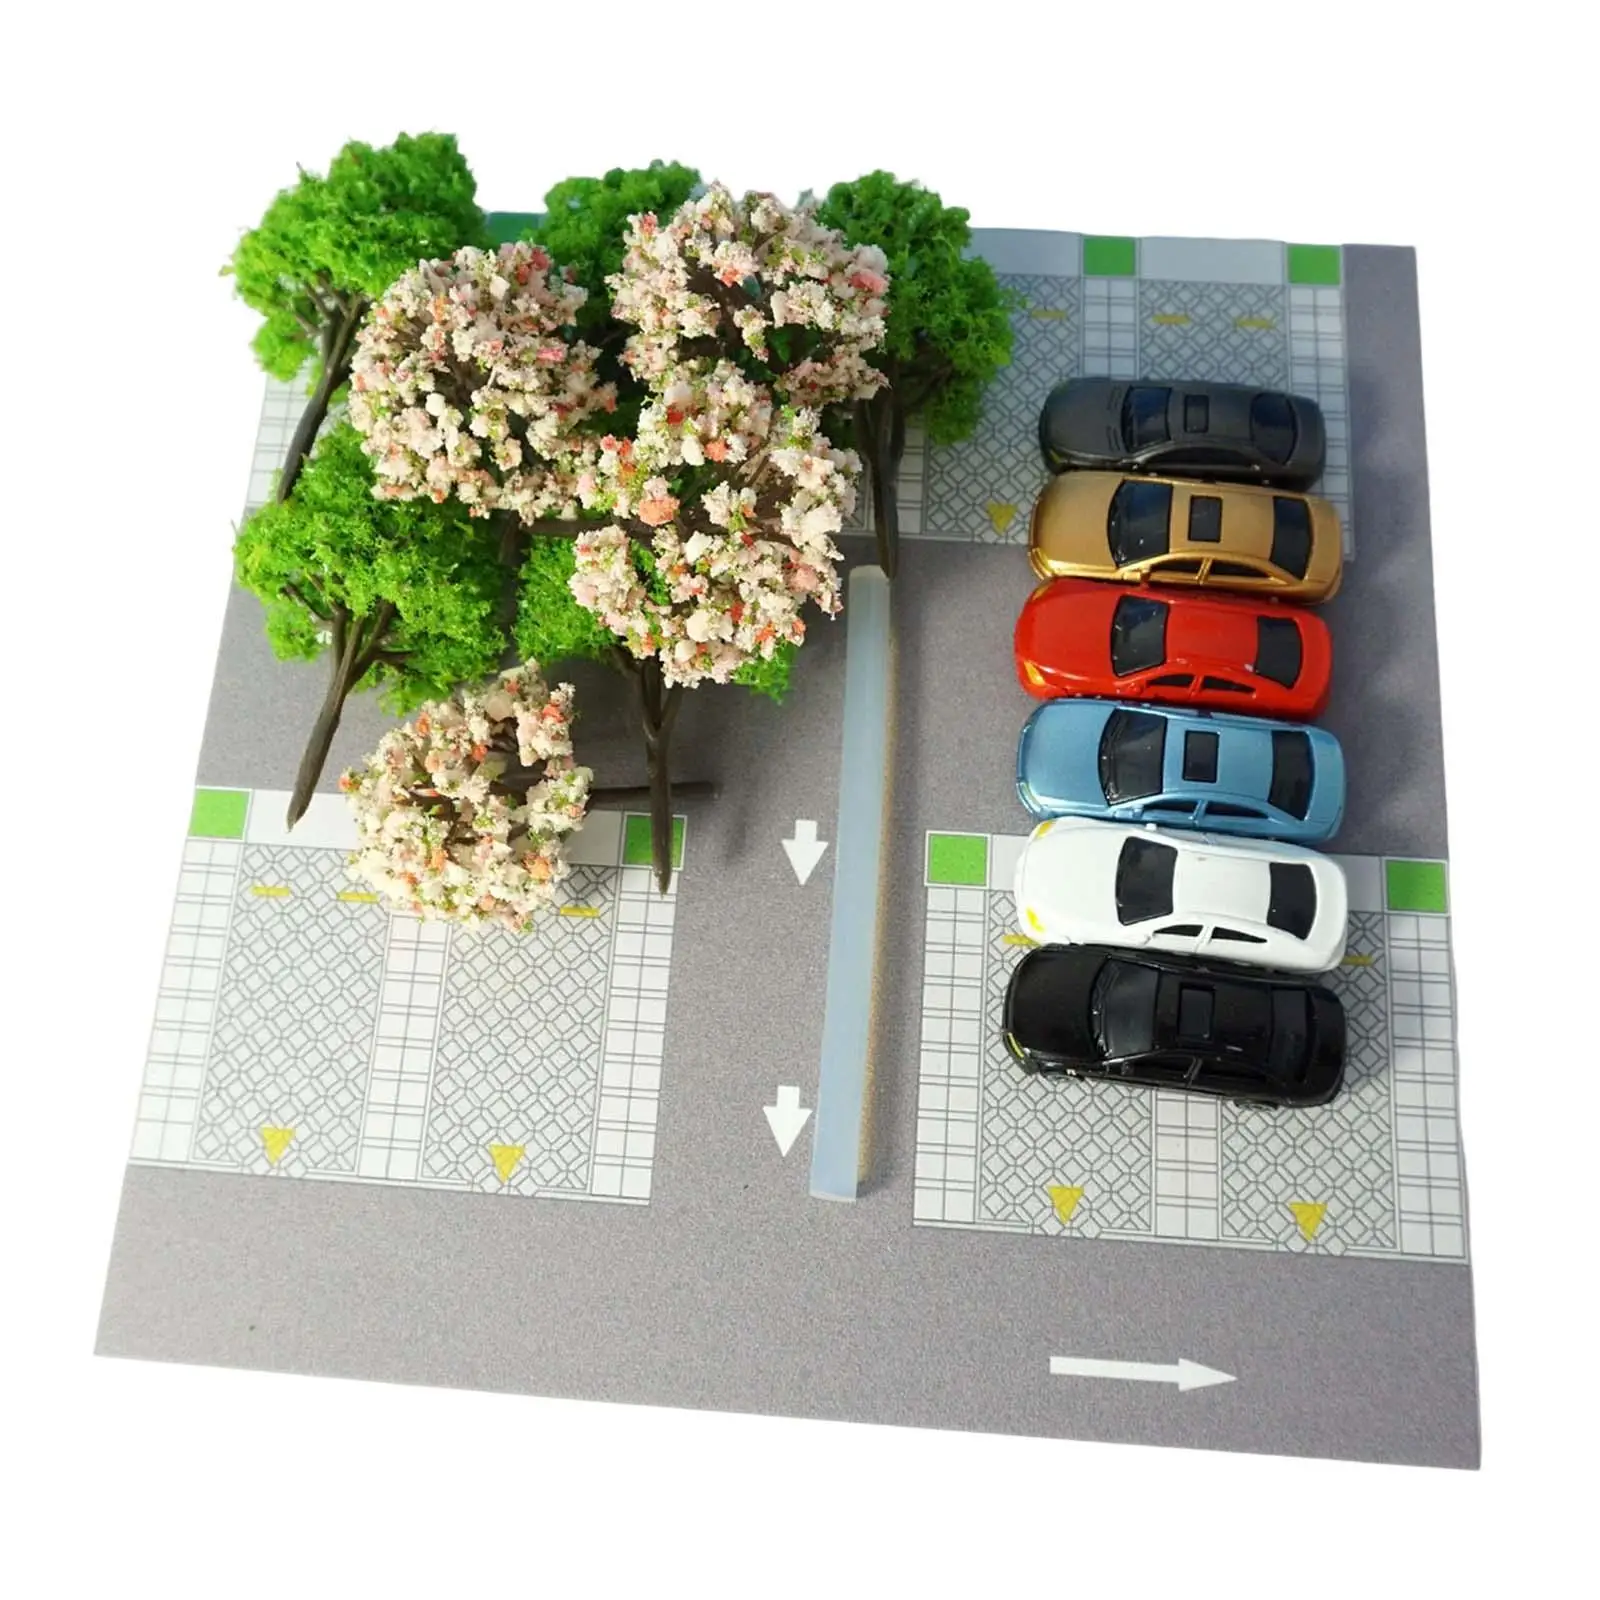 

Модель парковки, демонстрация сцены автомобиля, демонстрация парковки, здание в стиле Хо, наборы пейзажей для концентрирования, воображения, офиса